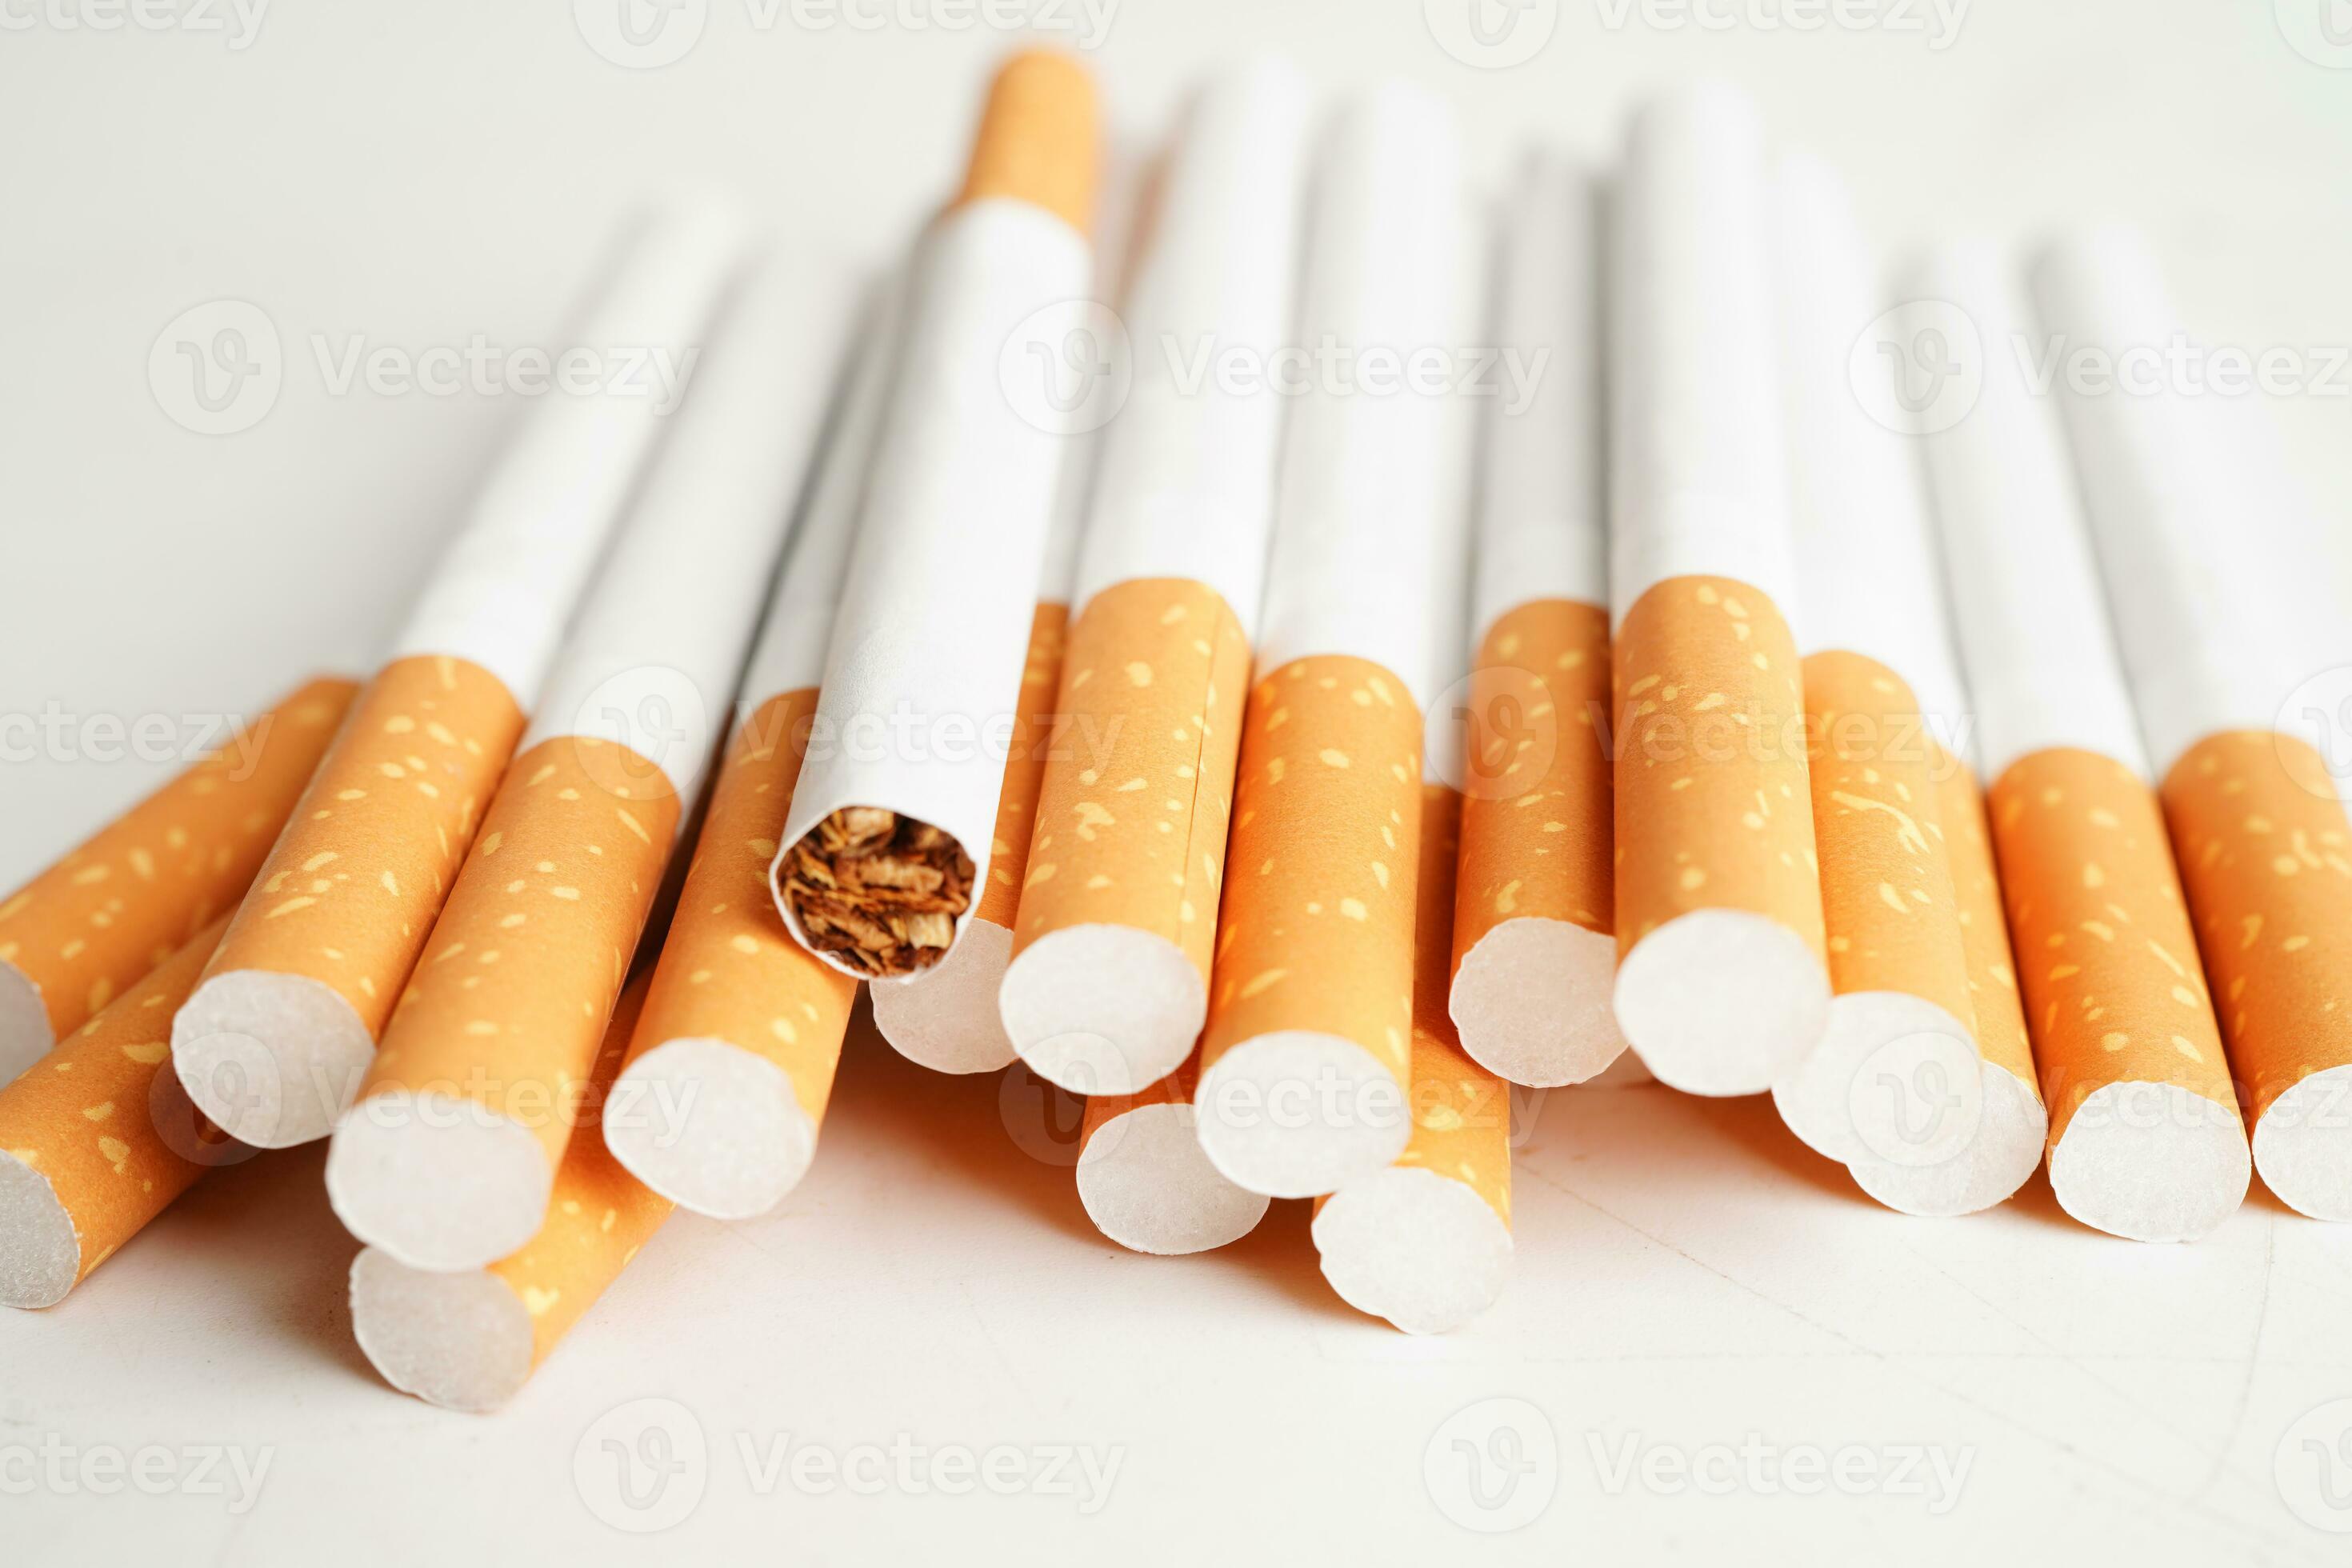 https://static.vecteezy.com/ti/photos-gratuite/p2/24993090-cigarette-tabac-a-rouler-en-papier-avec-tube-filtrant-concept-non-fumeur-photo.jpg